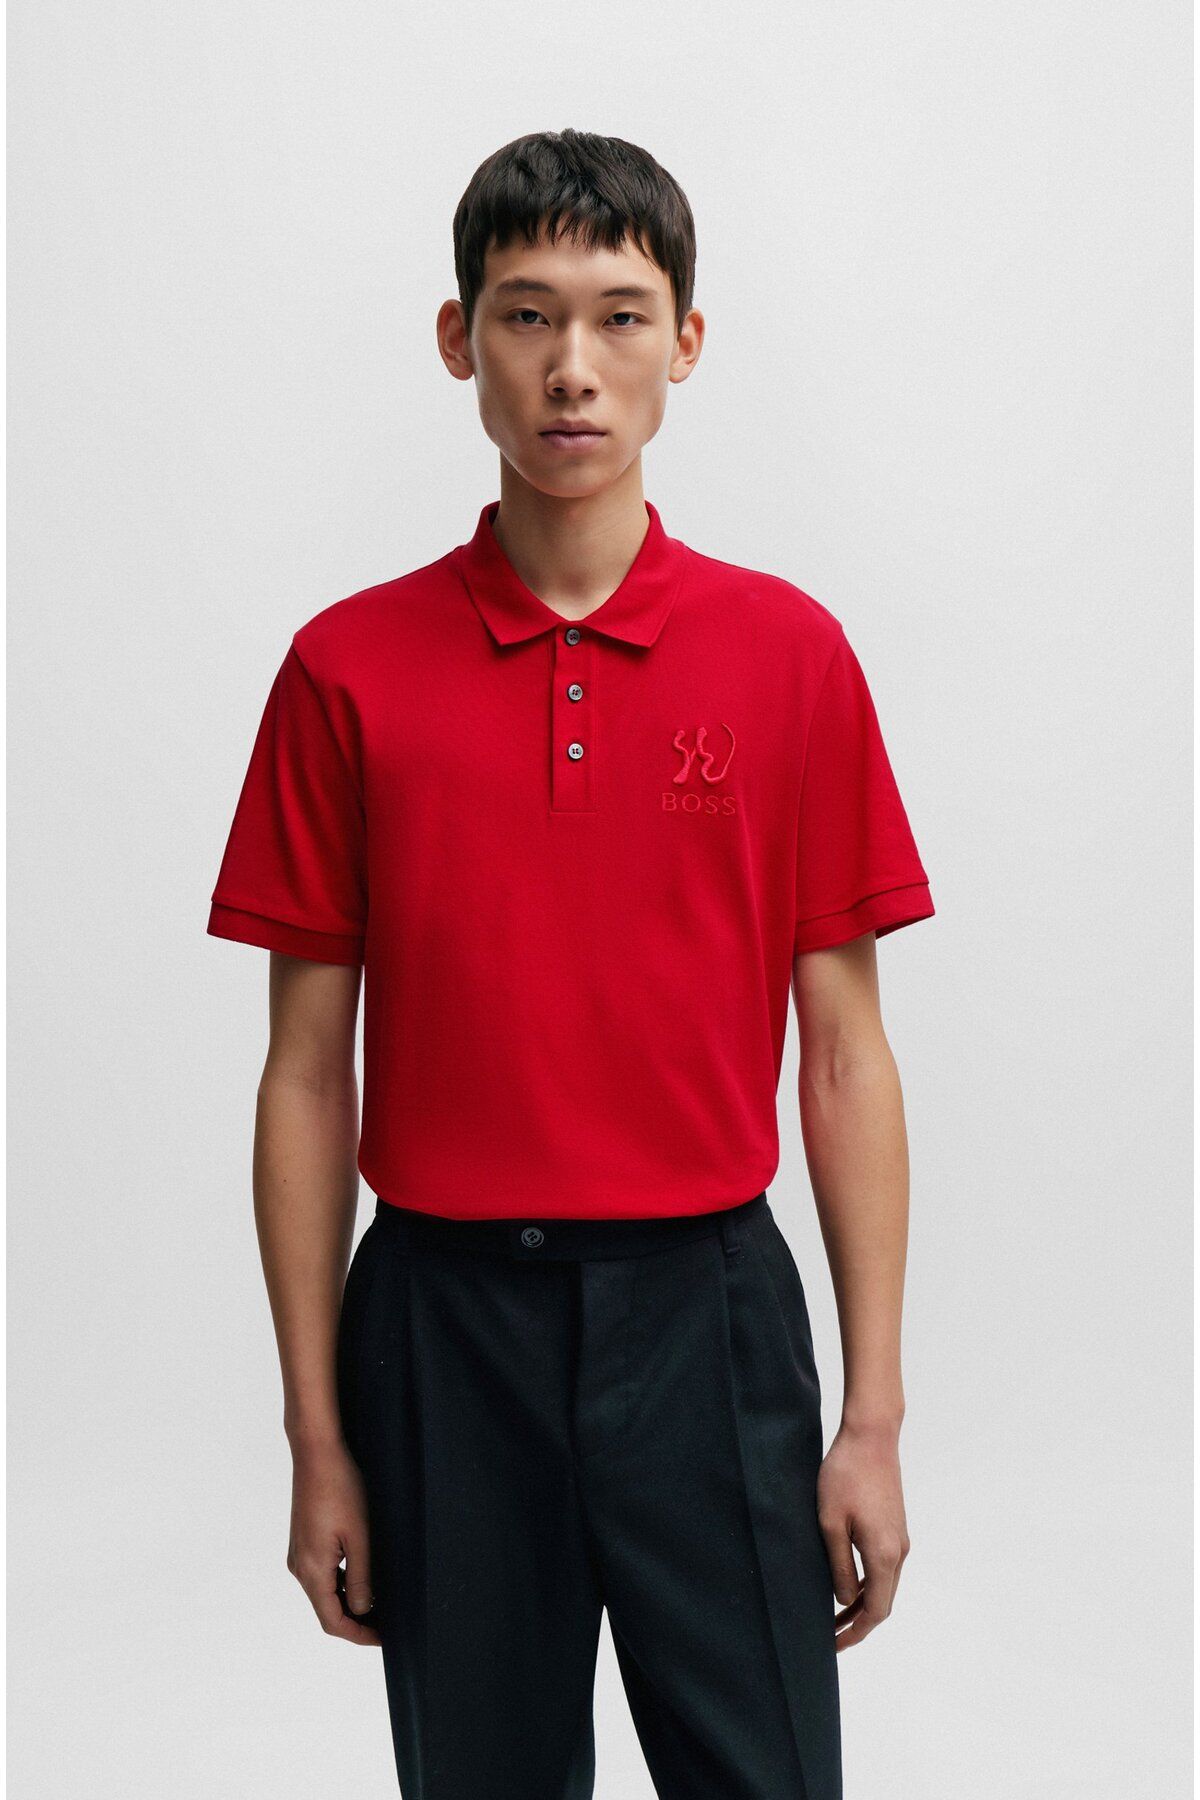 BOSS Erkek Pamuklu Polo Yakalı Düğme Kapamalı Kısa Kollu Kırmızı Polo Yaka T-Shirt 50510126-623